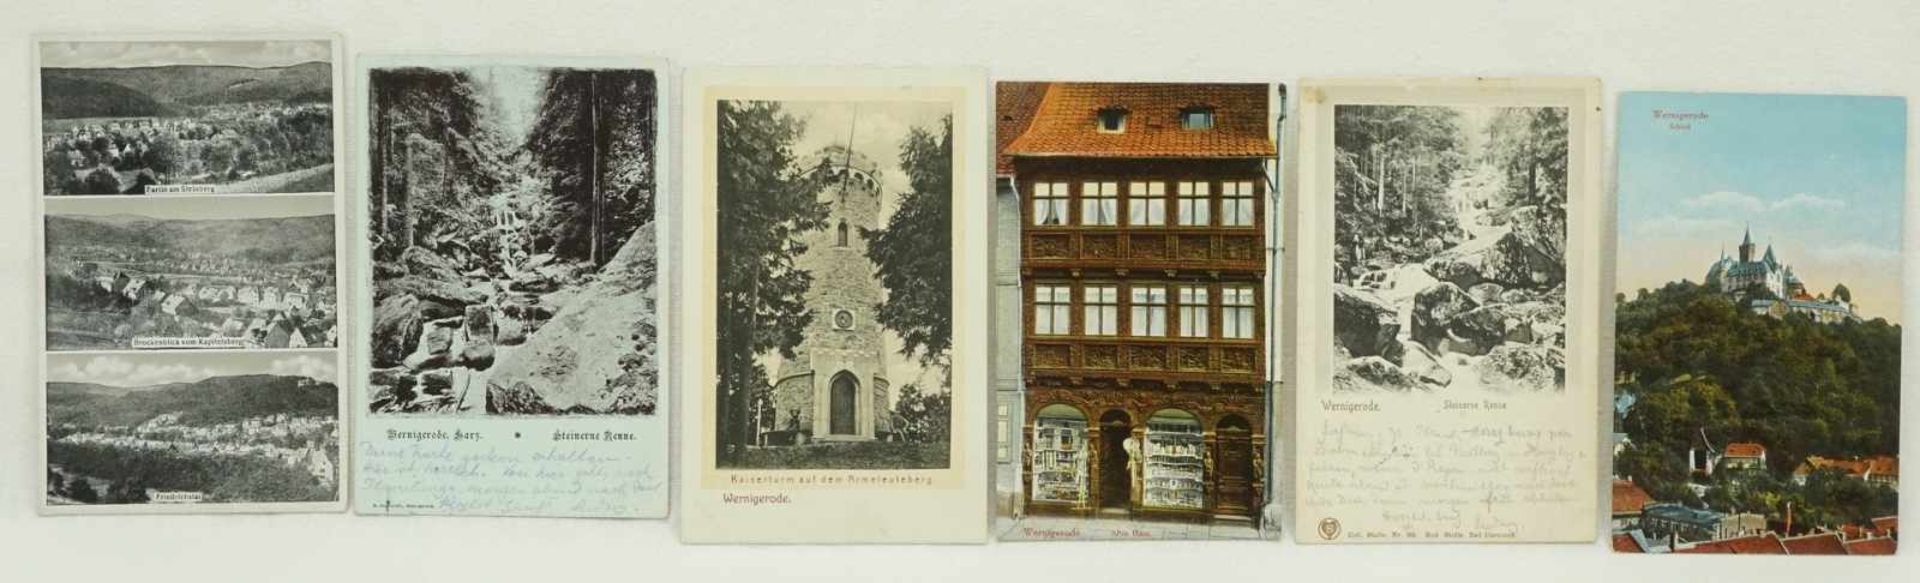 54 Historische Postkarten Harz - Bild 6 aus 6